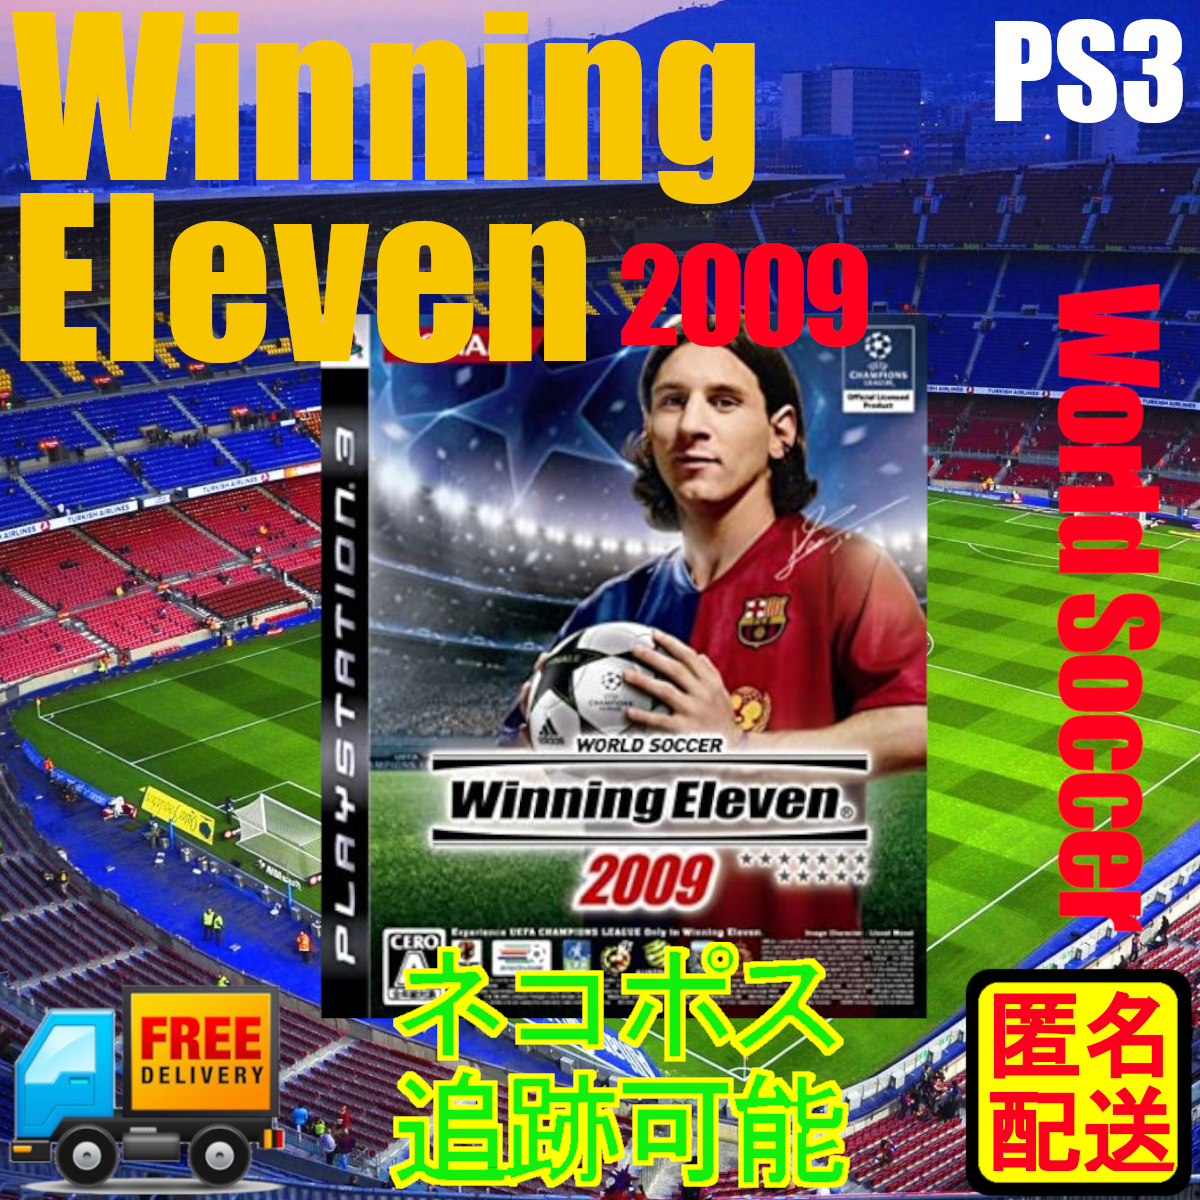 PS3 Выделенная победа Одиннадцать 2009